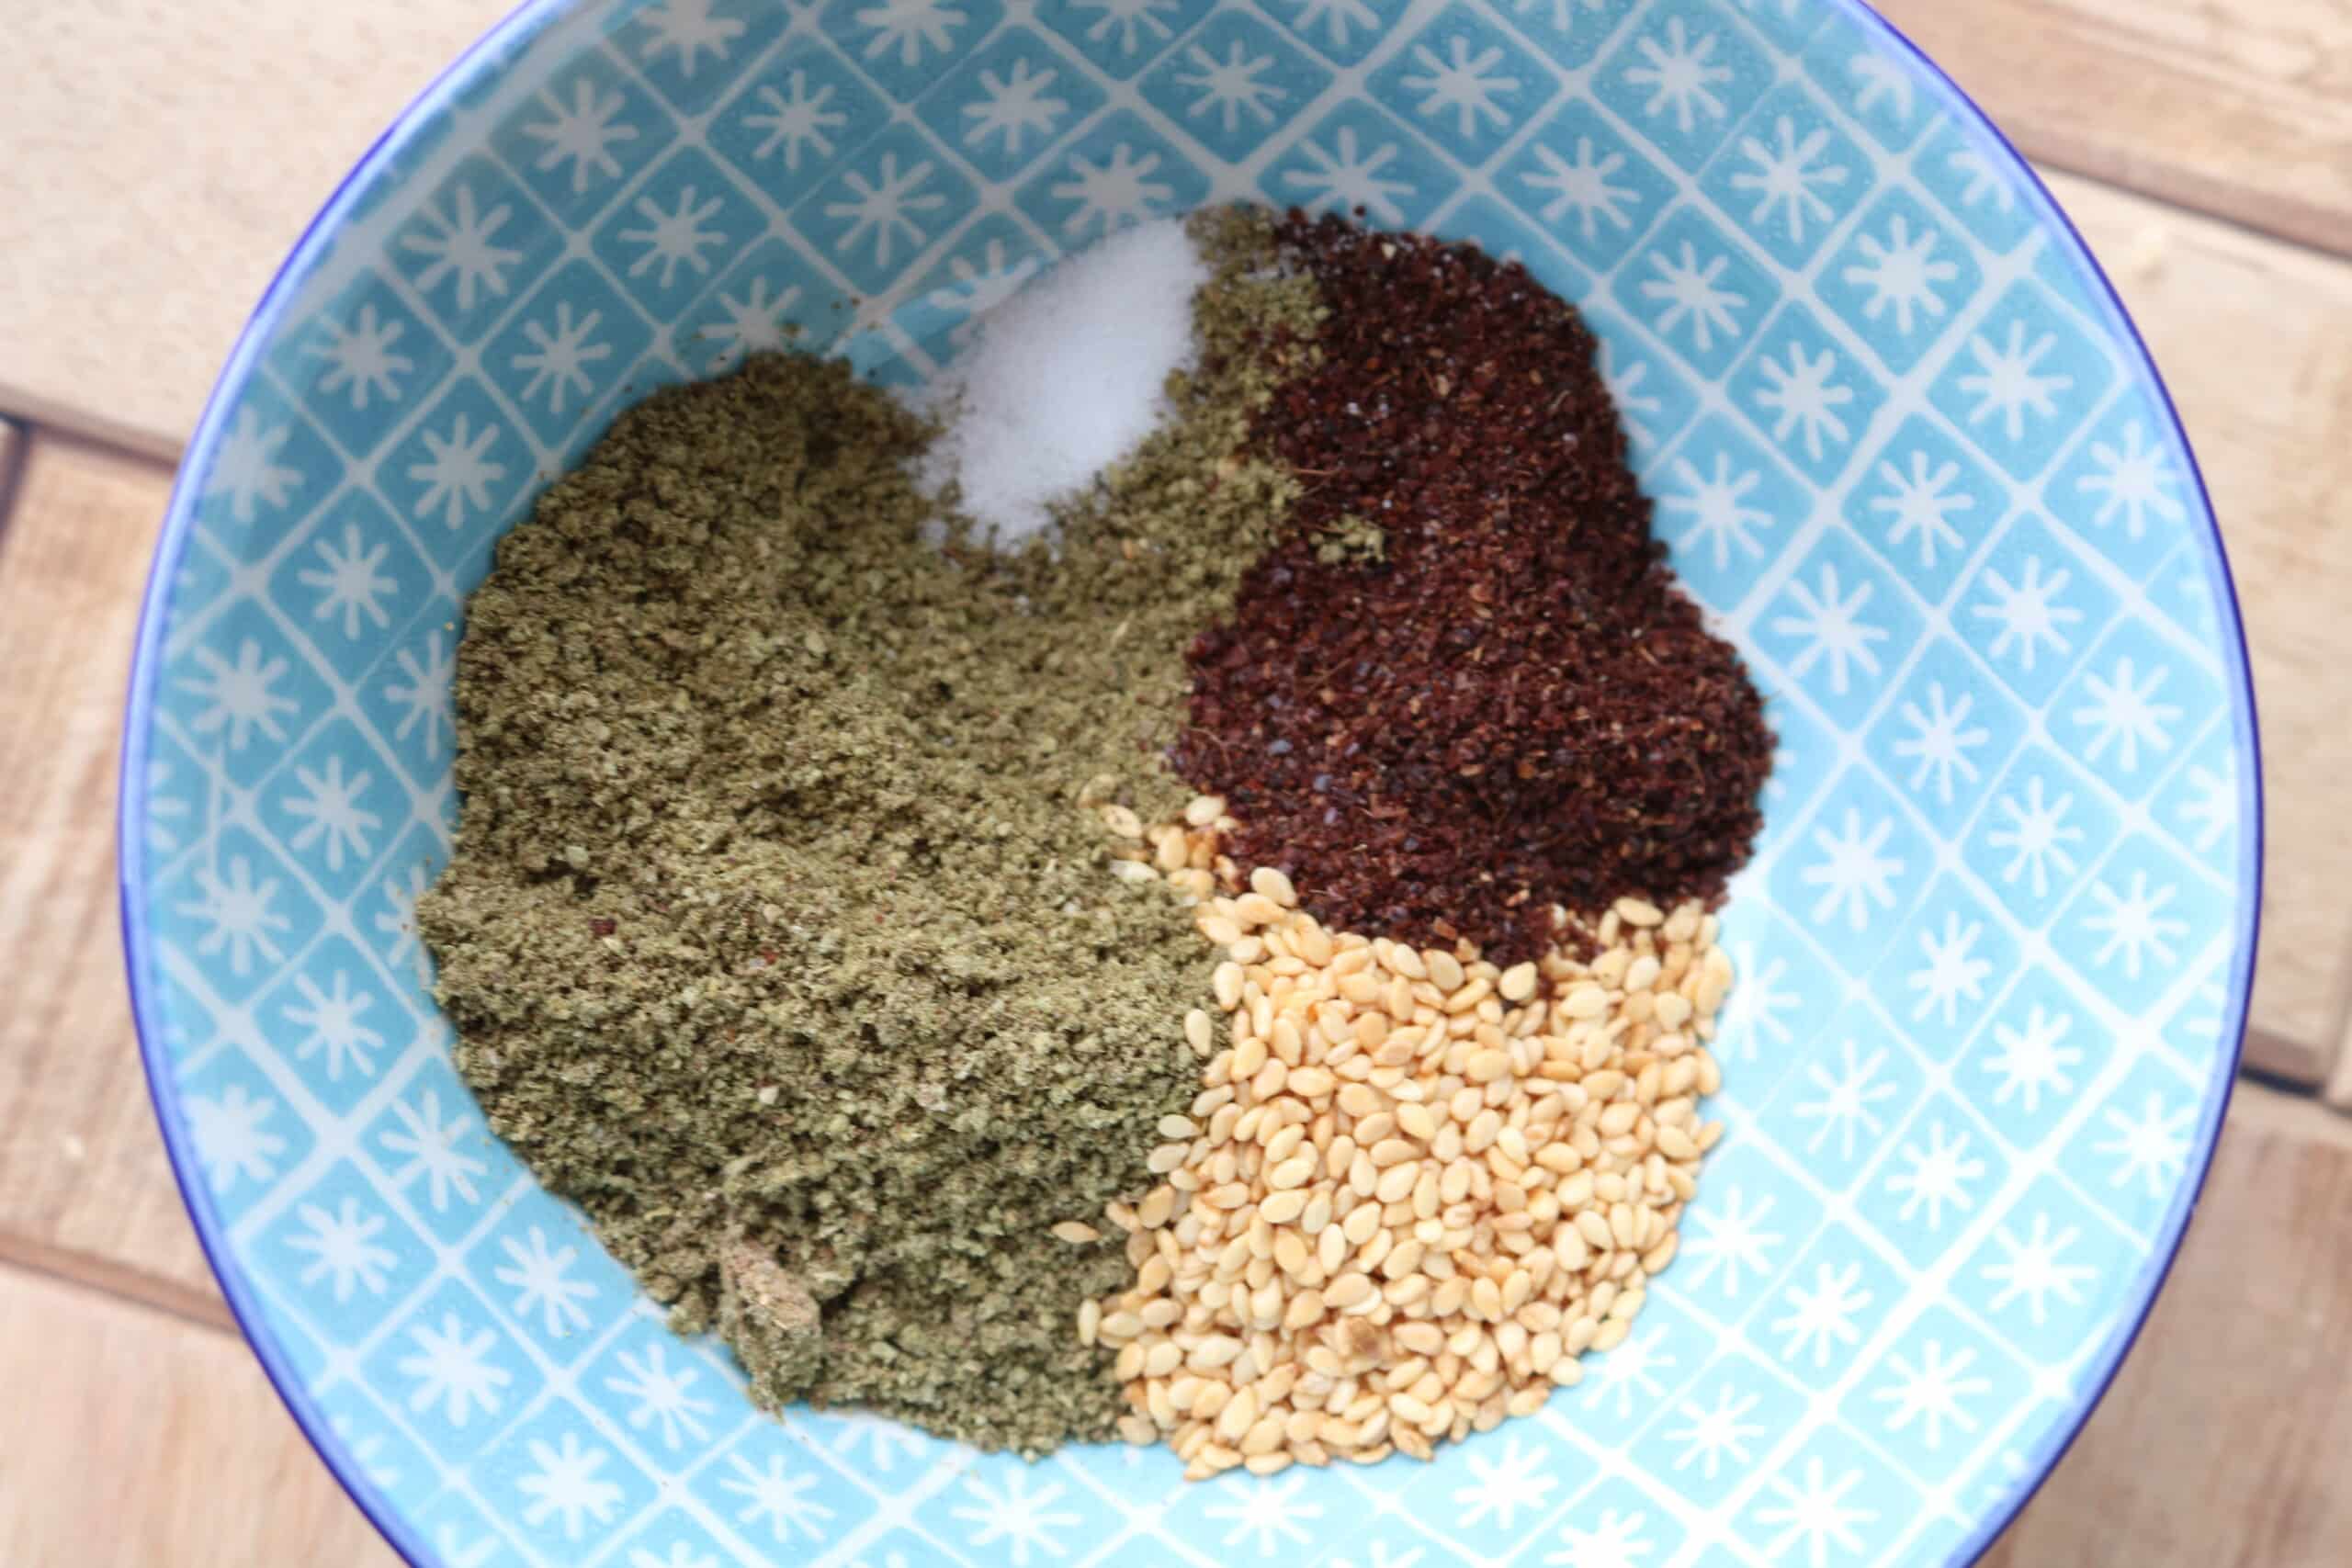 zaatar herb blend